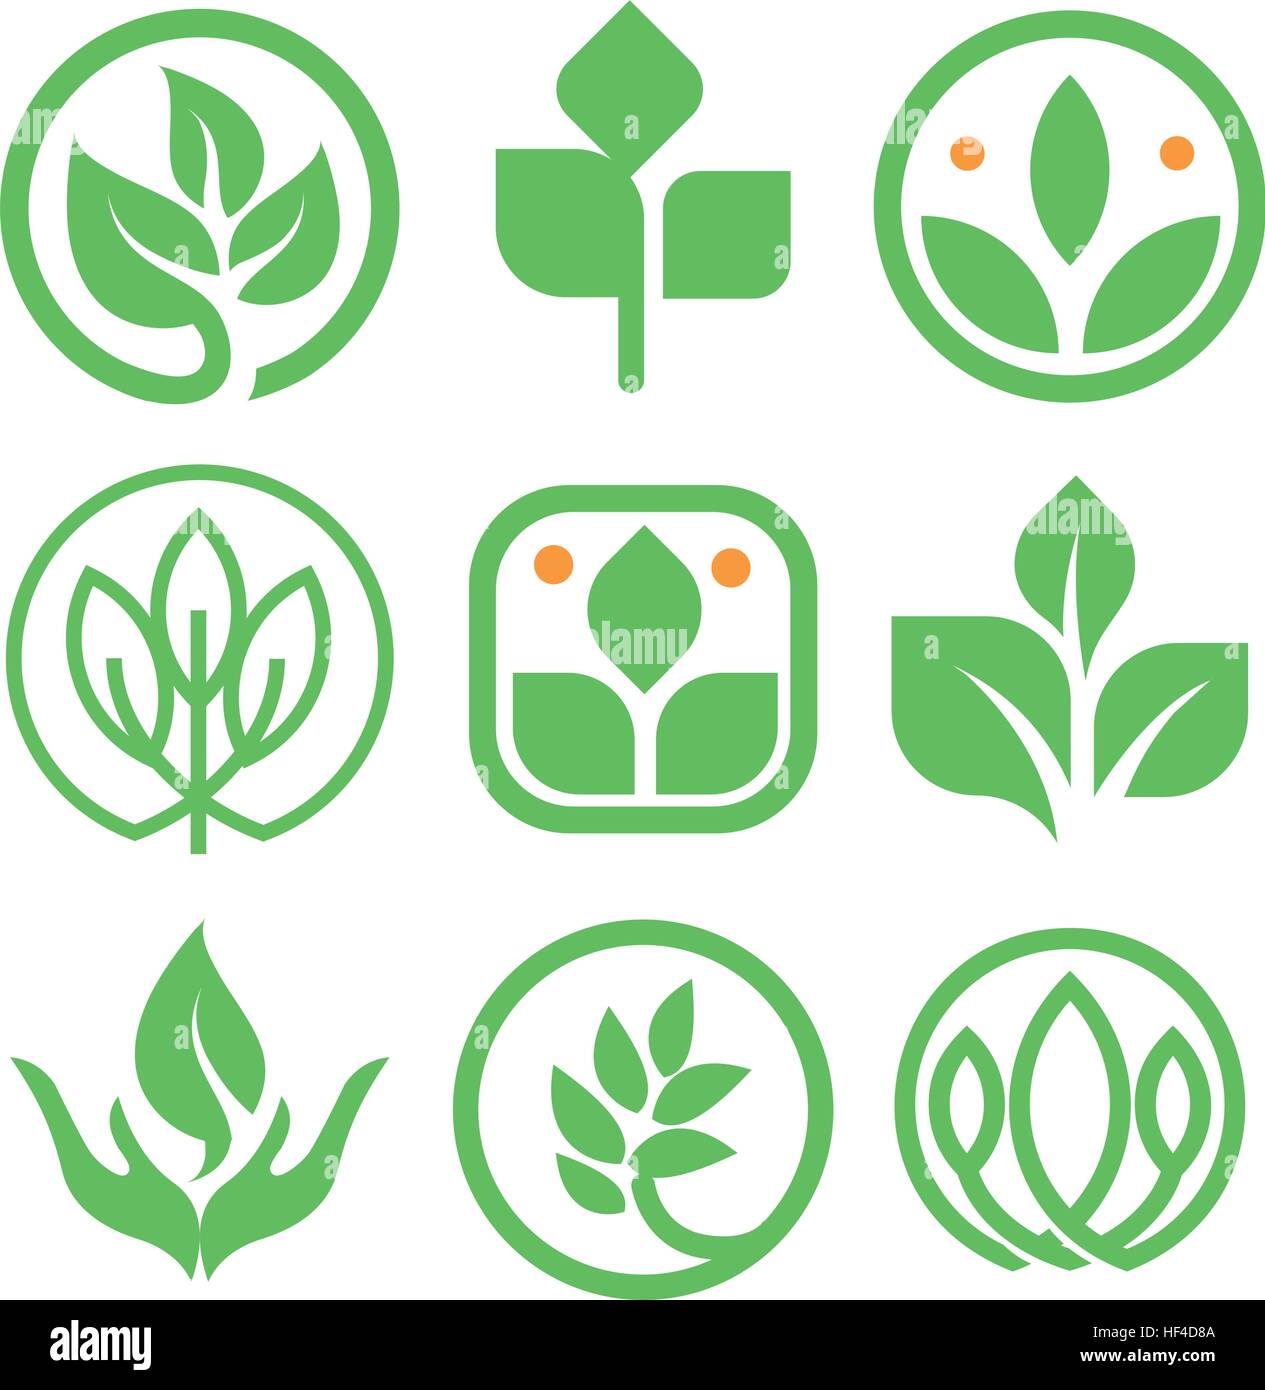 Isolierte abstrakt Grün Logo-Sammlung. Runde Form Natur Element Logo gesetzt. Blatt in Menschenhand Symbol. Landwirtschaftliche Bioprodukte Zeichen. Heilende Kräuter Vektor-Illustration. Stock Vektor